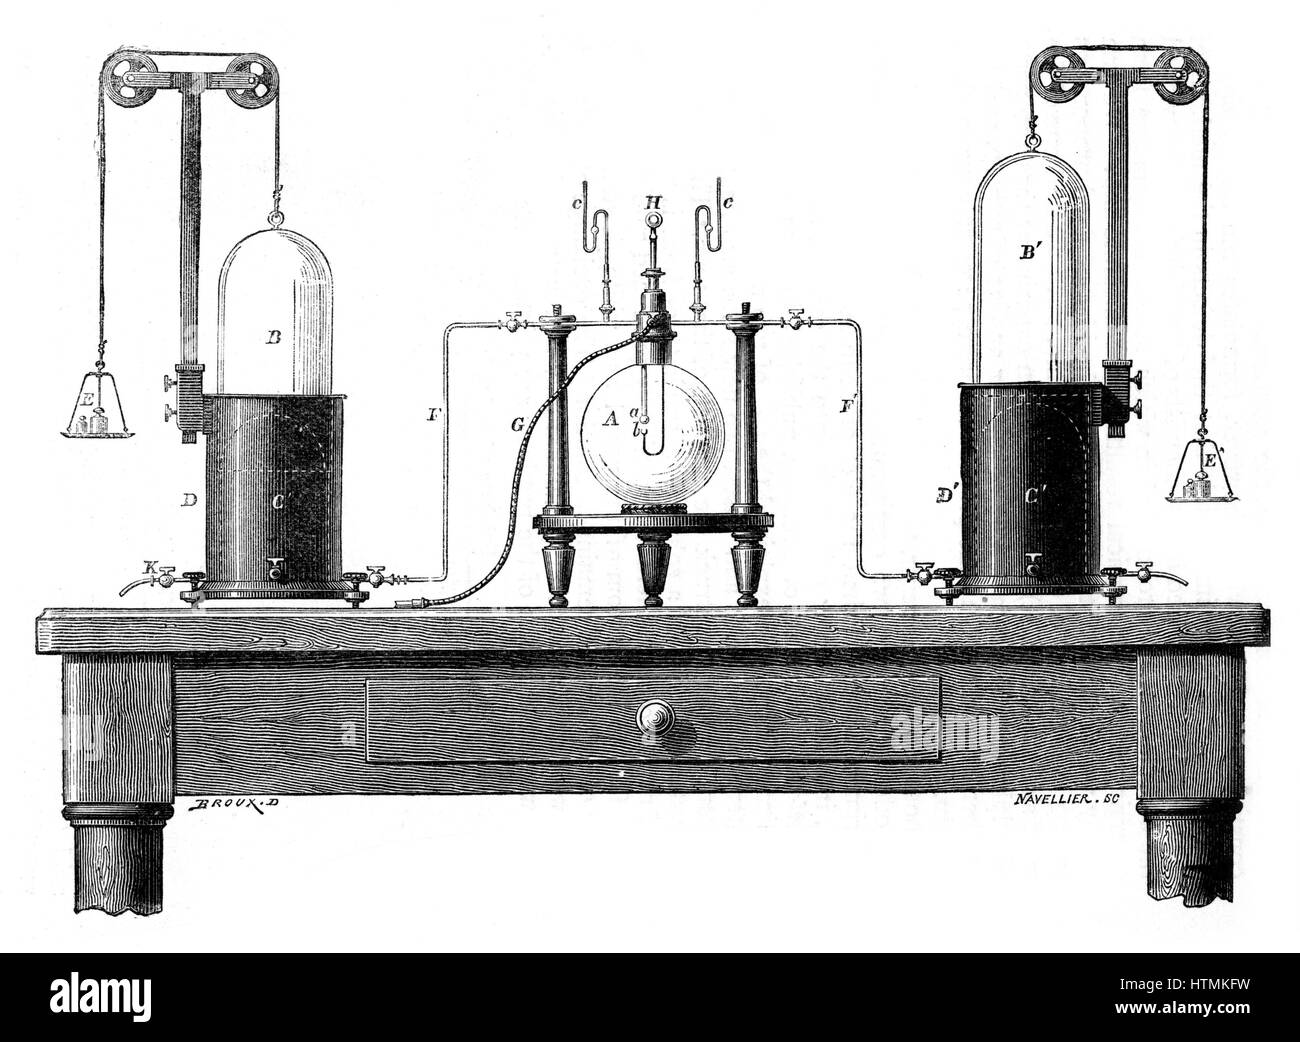 Lavoisier di apparecchiatura per la sintesi di acqua da idrogeno (sinistra) e ossigeno (a destra). Da Robert Routledge 'una storia popolare della scienza", Londra, 1881. Antoine Laurent Lavoisier (1743-94) chimico francese. Incisione Foto Stock